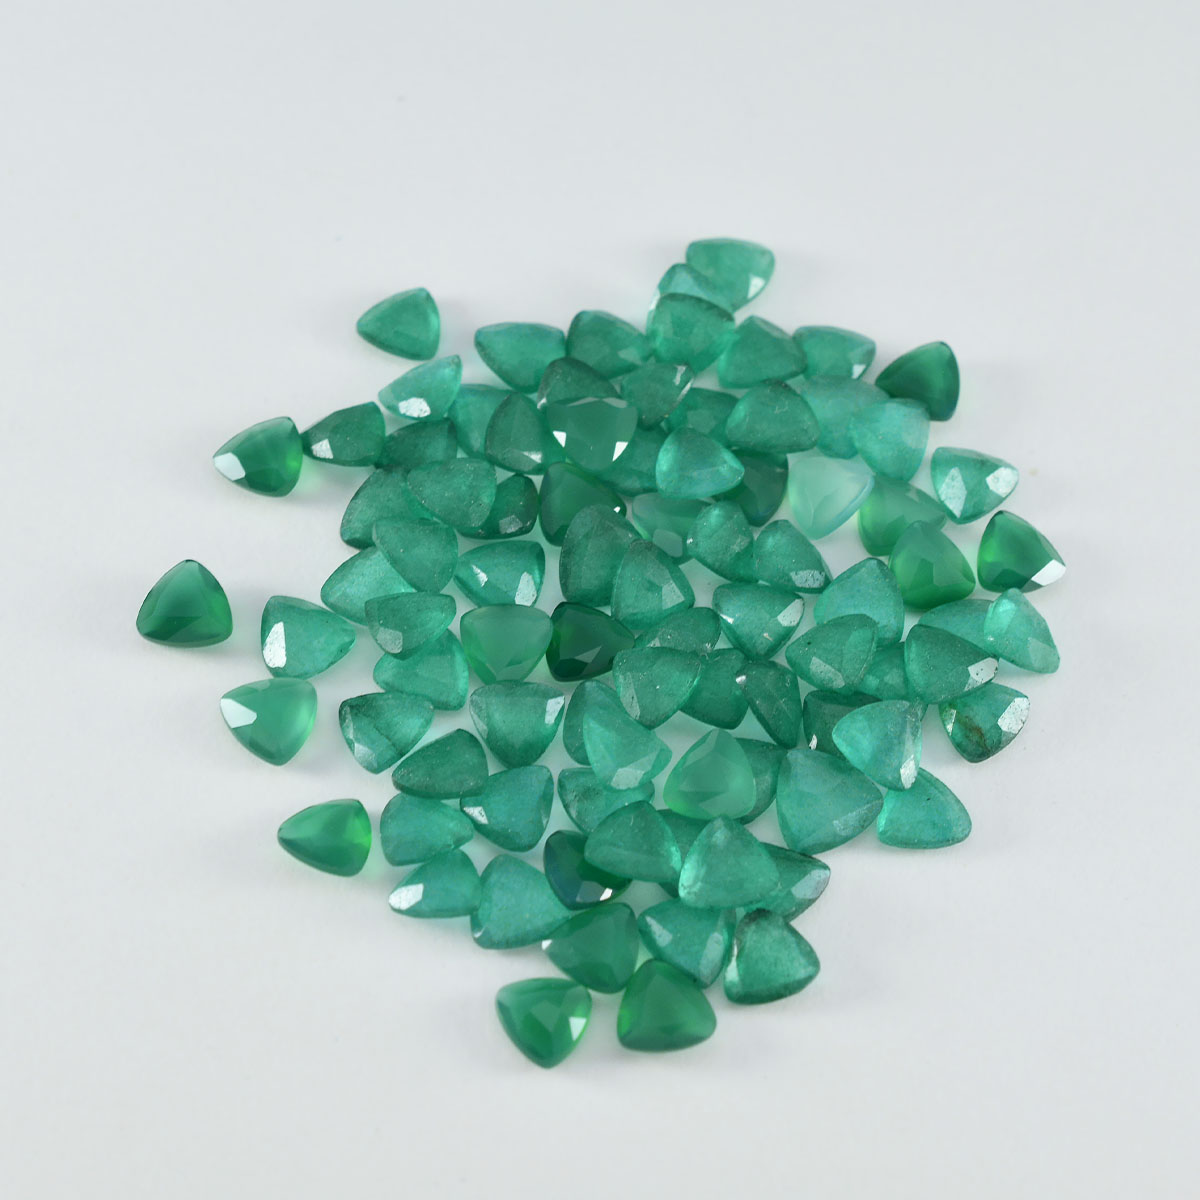 riyogems 1 шт. натуральный зеленый оникс граненый 5x5 мм форма триллиона отличное качество свободный камень